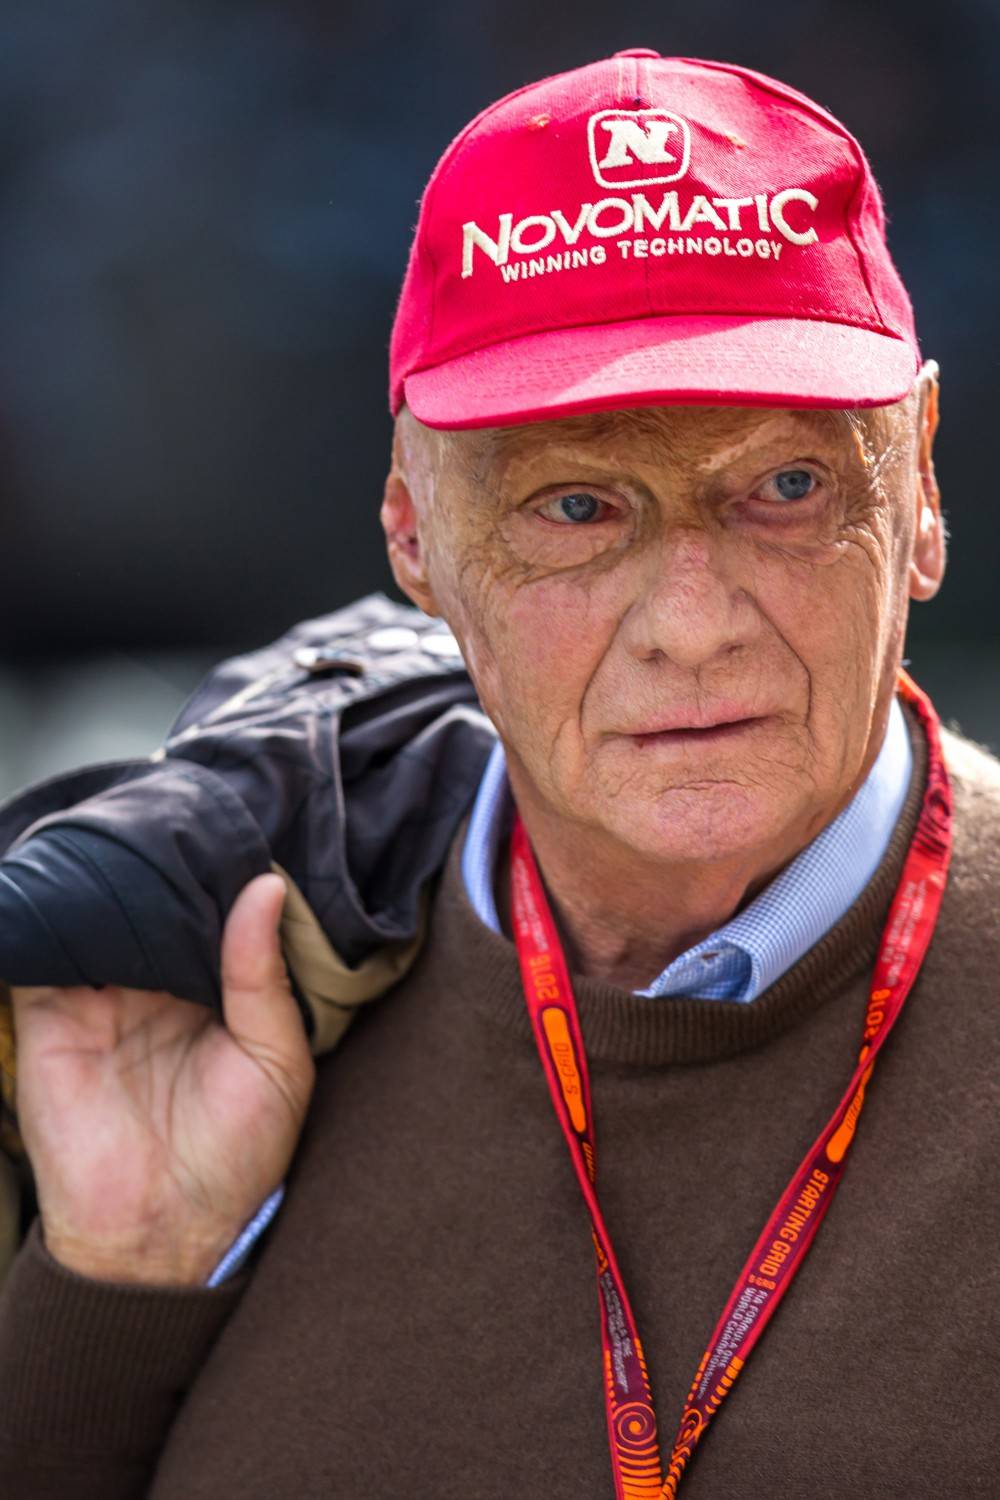 Niki Lauda campione in pista e fuori: le frasi che lo hanno reso unico e inimitabile